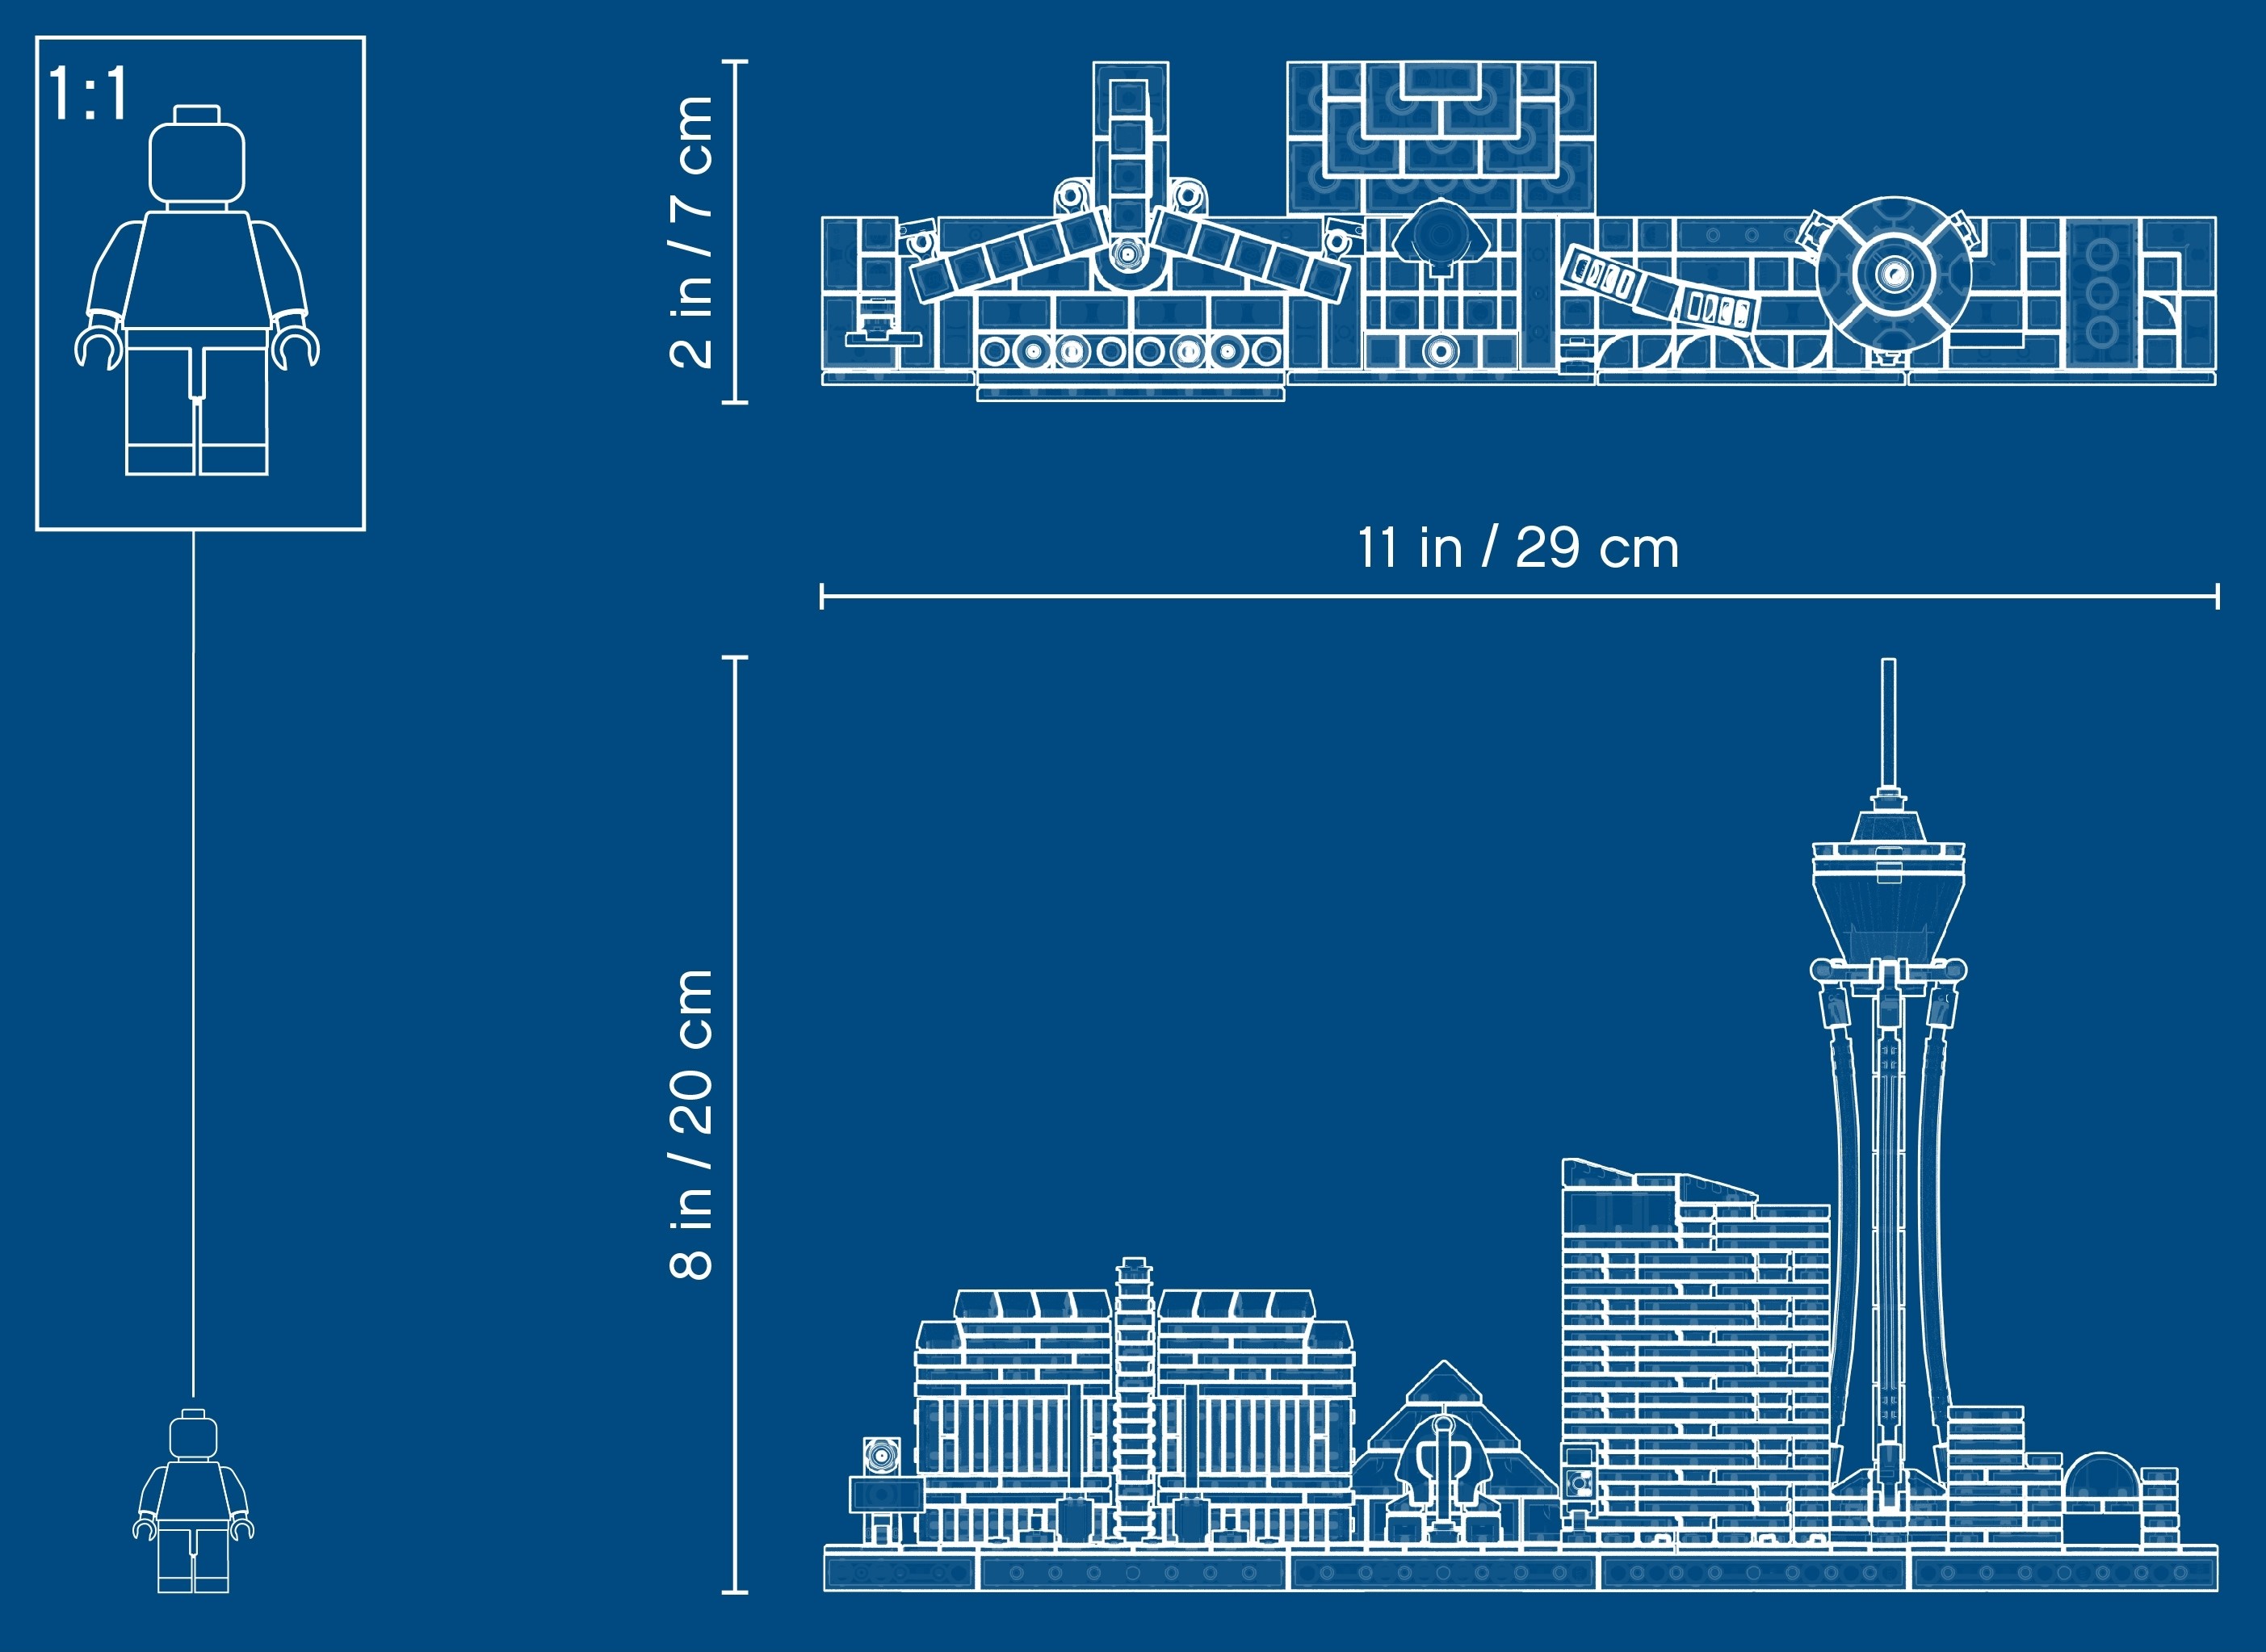 LEGO Architecture Skyline Collection Las Vegas Building Kit 21047 (487  Pieces)